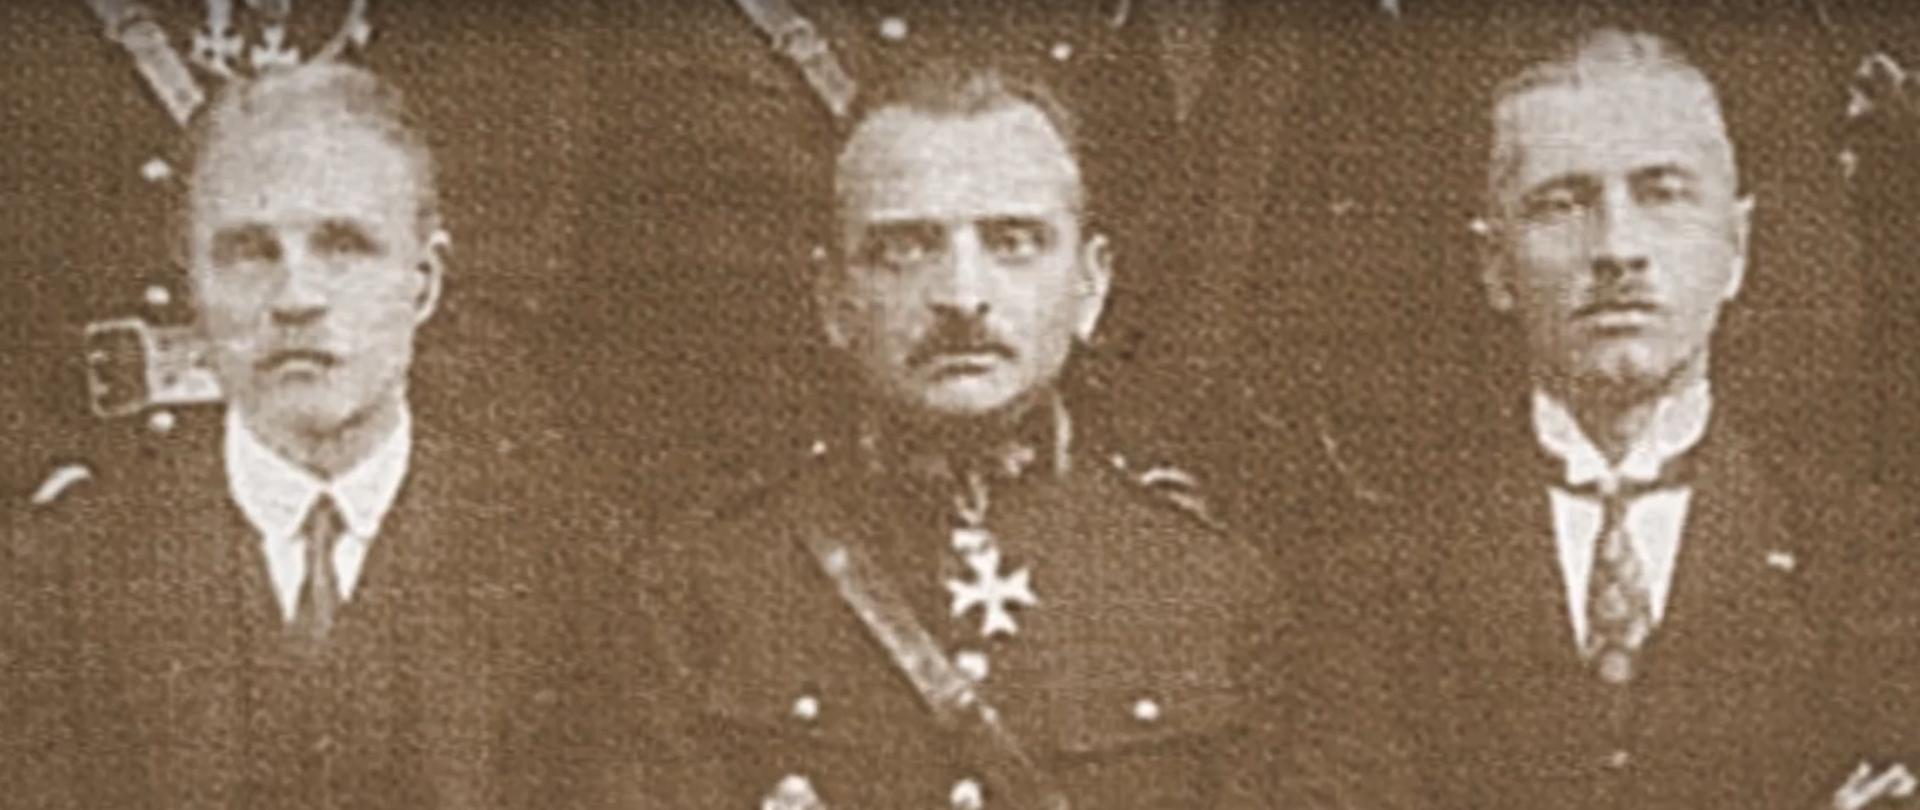 Bolesław Chomicz w towarzystwie dwóch mężczyzn